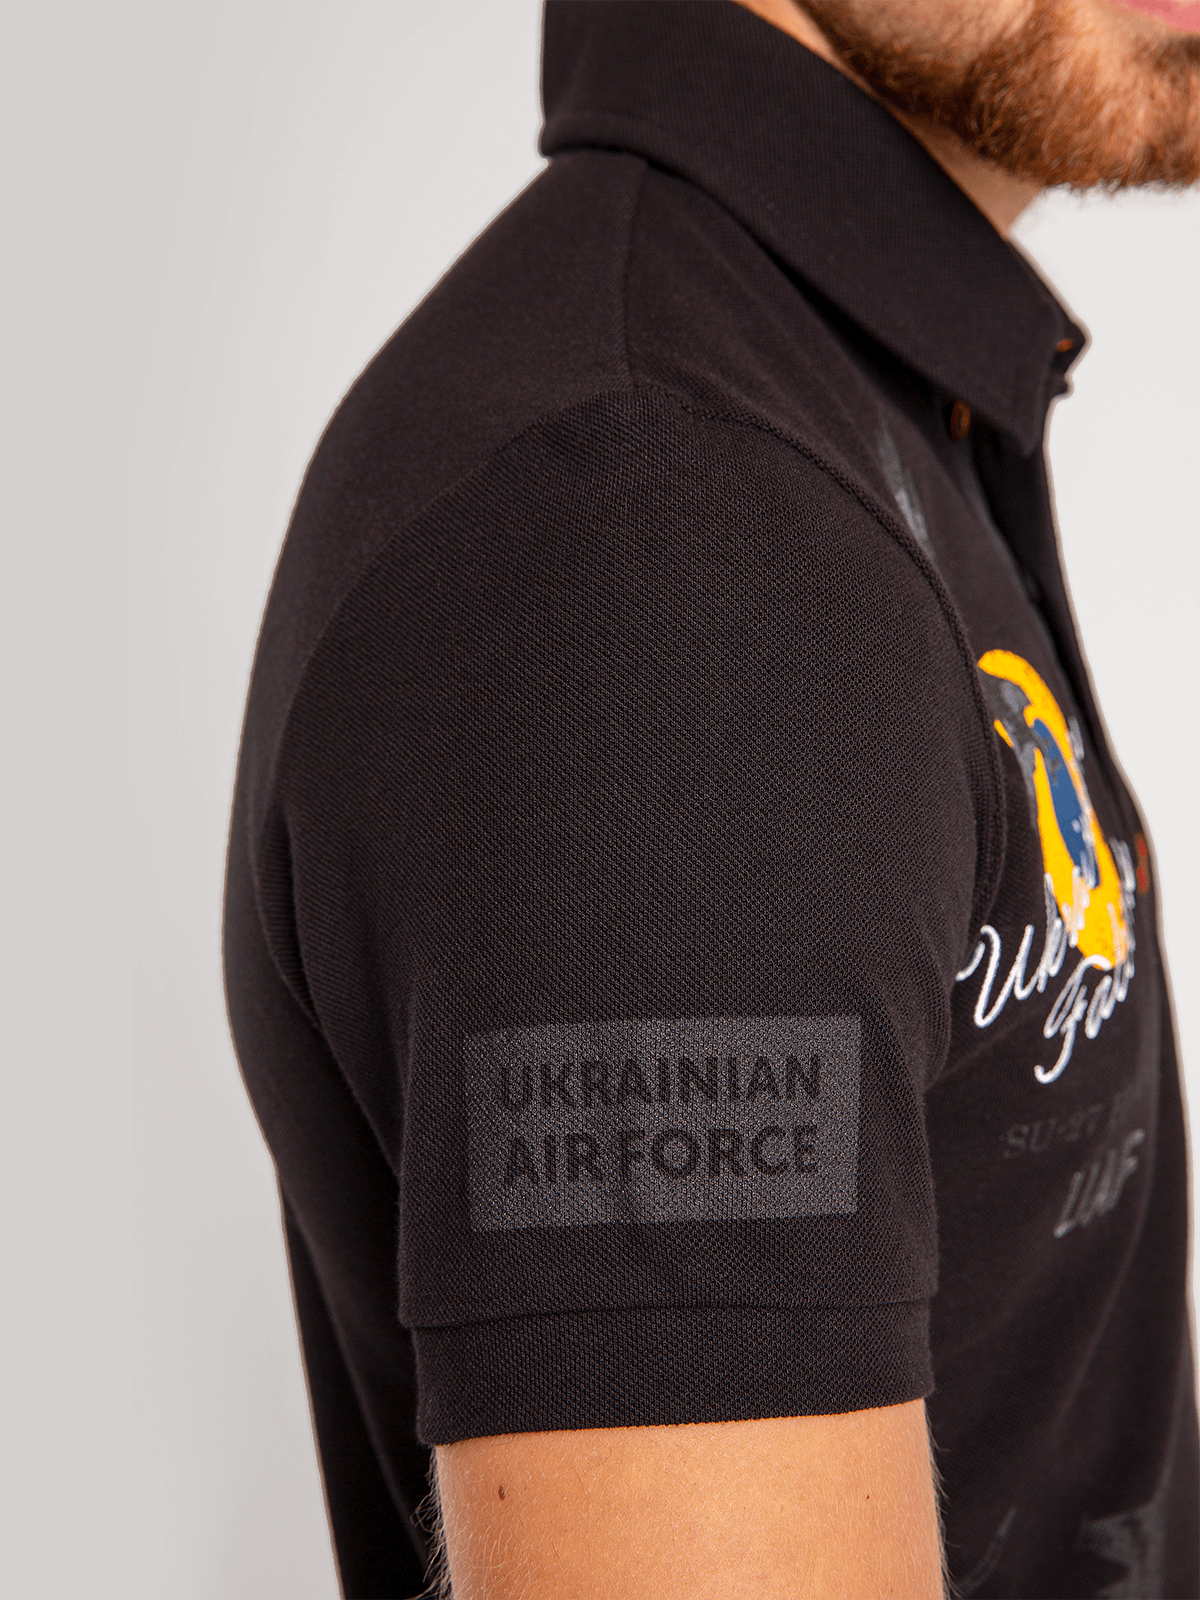 Men's Polo Shirt Ukrainian Falcons. Color black. 
Size worn by the model: M.